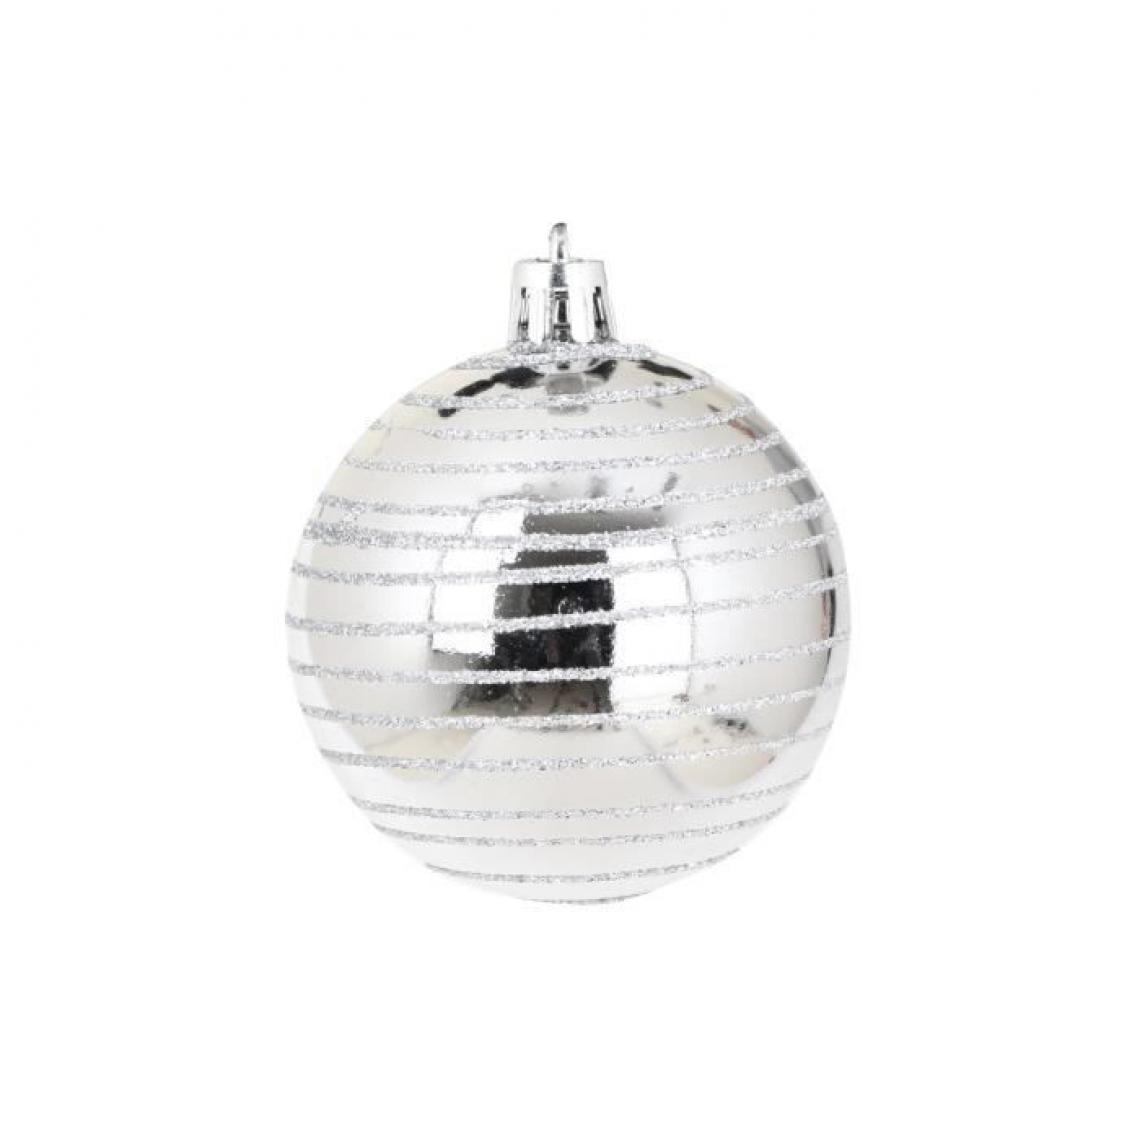 Cstore - AUTOUR DE MINUIT Set de 6 boules décorées finition brillante - Ø6 cm - Argent - Décorations de Noël